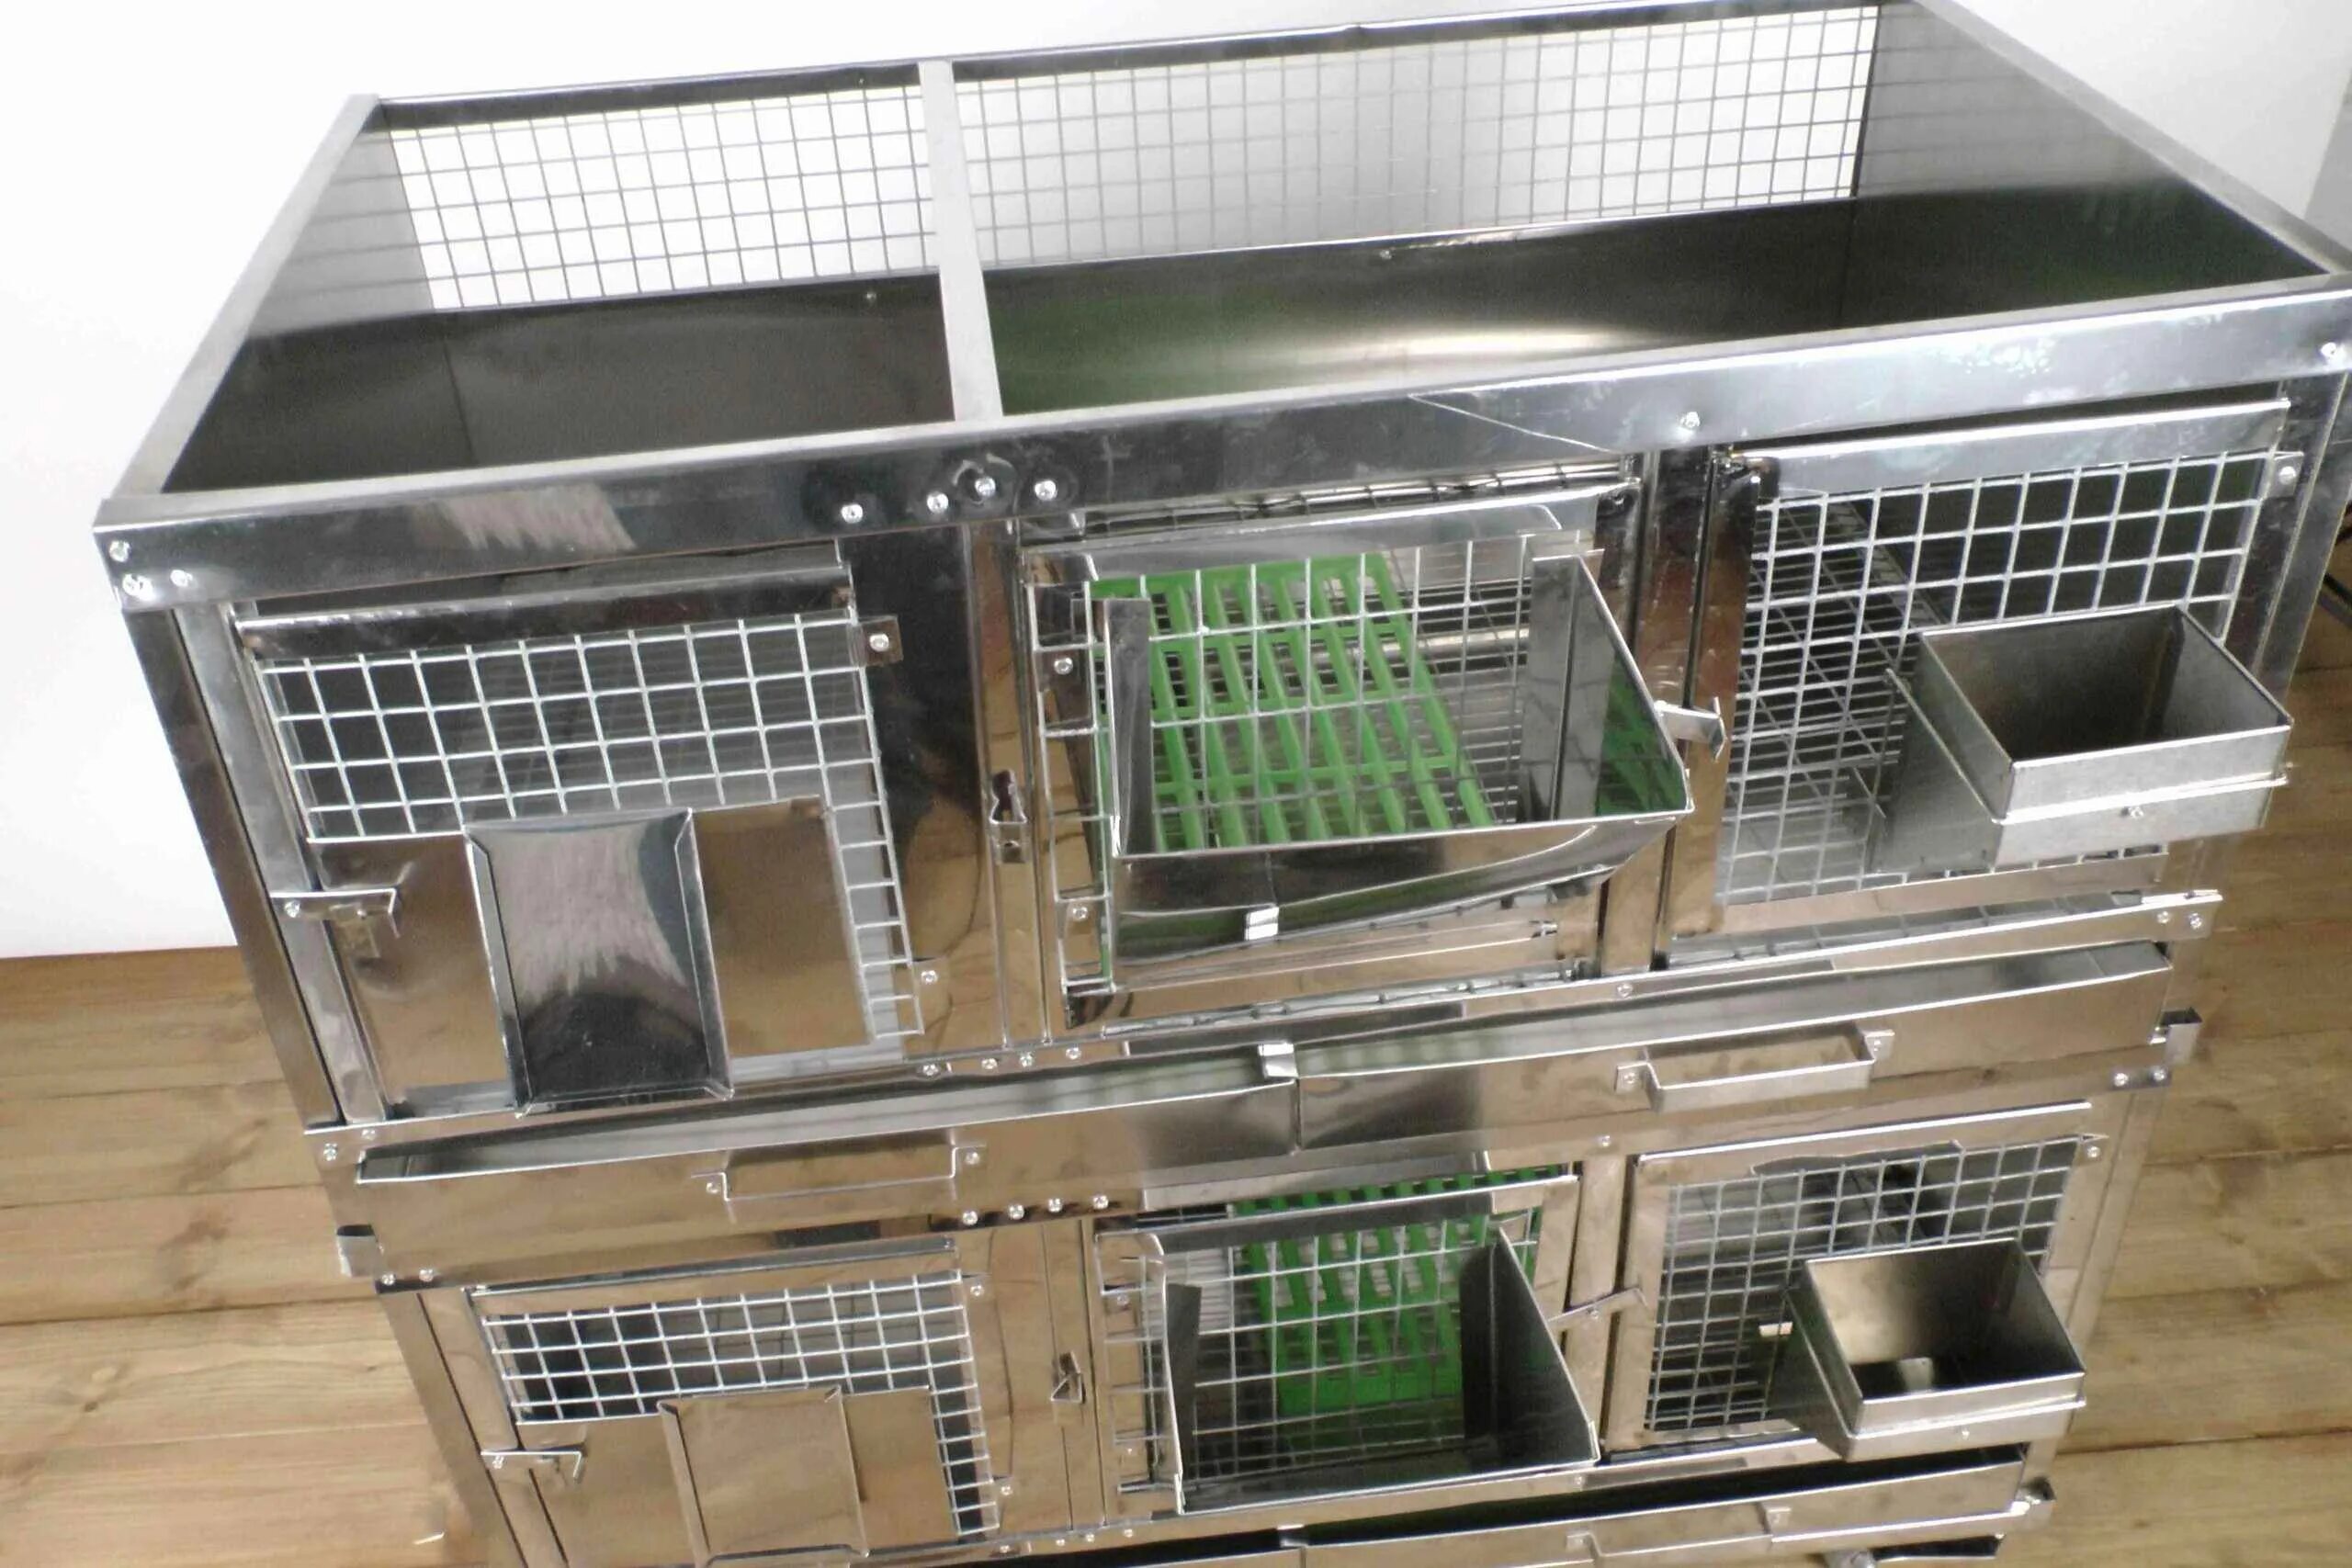 Моя милая клетка для кроликов. ЕВРОФЕРМА клетки для кроликов. Промышленная кроликоферма клетки. Панкроль клетки для кроликов. Модуль клеток для вивариев кроликов 800х746х1640.